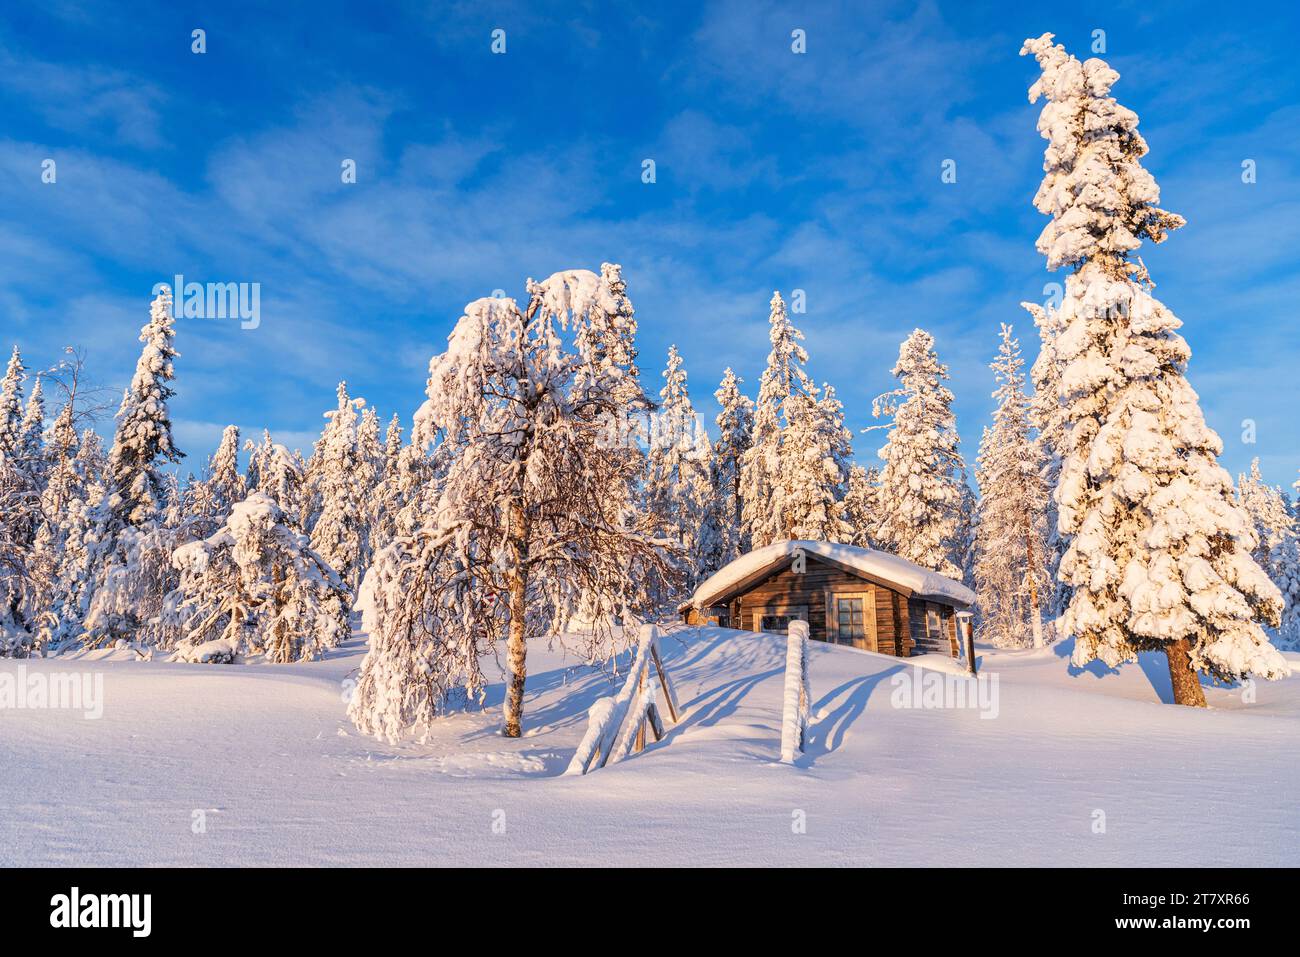 Cielo azzurro su cottage solitario tra foreste boreali ricoperte di ghiaccio e neve, Kangos, Norrbotten, Lapponia svedese, Svezia, Scandinavia, Europa Foto Stock